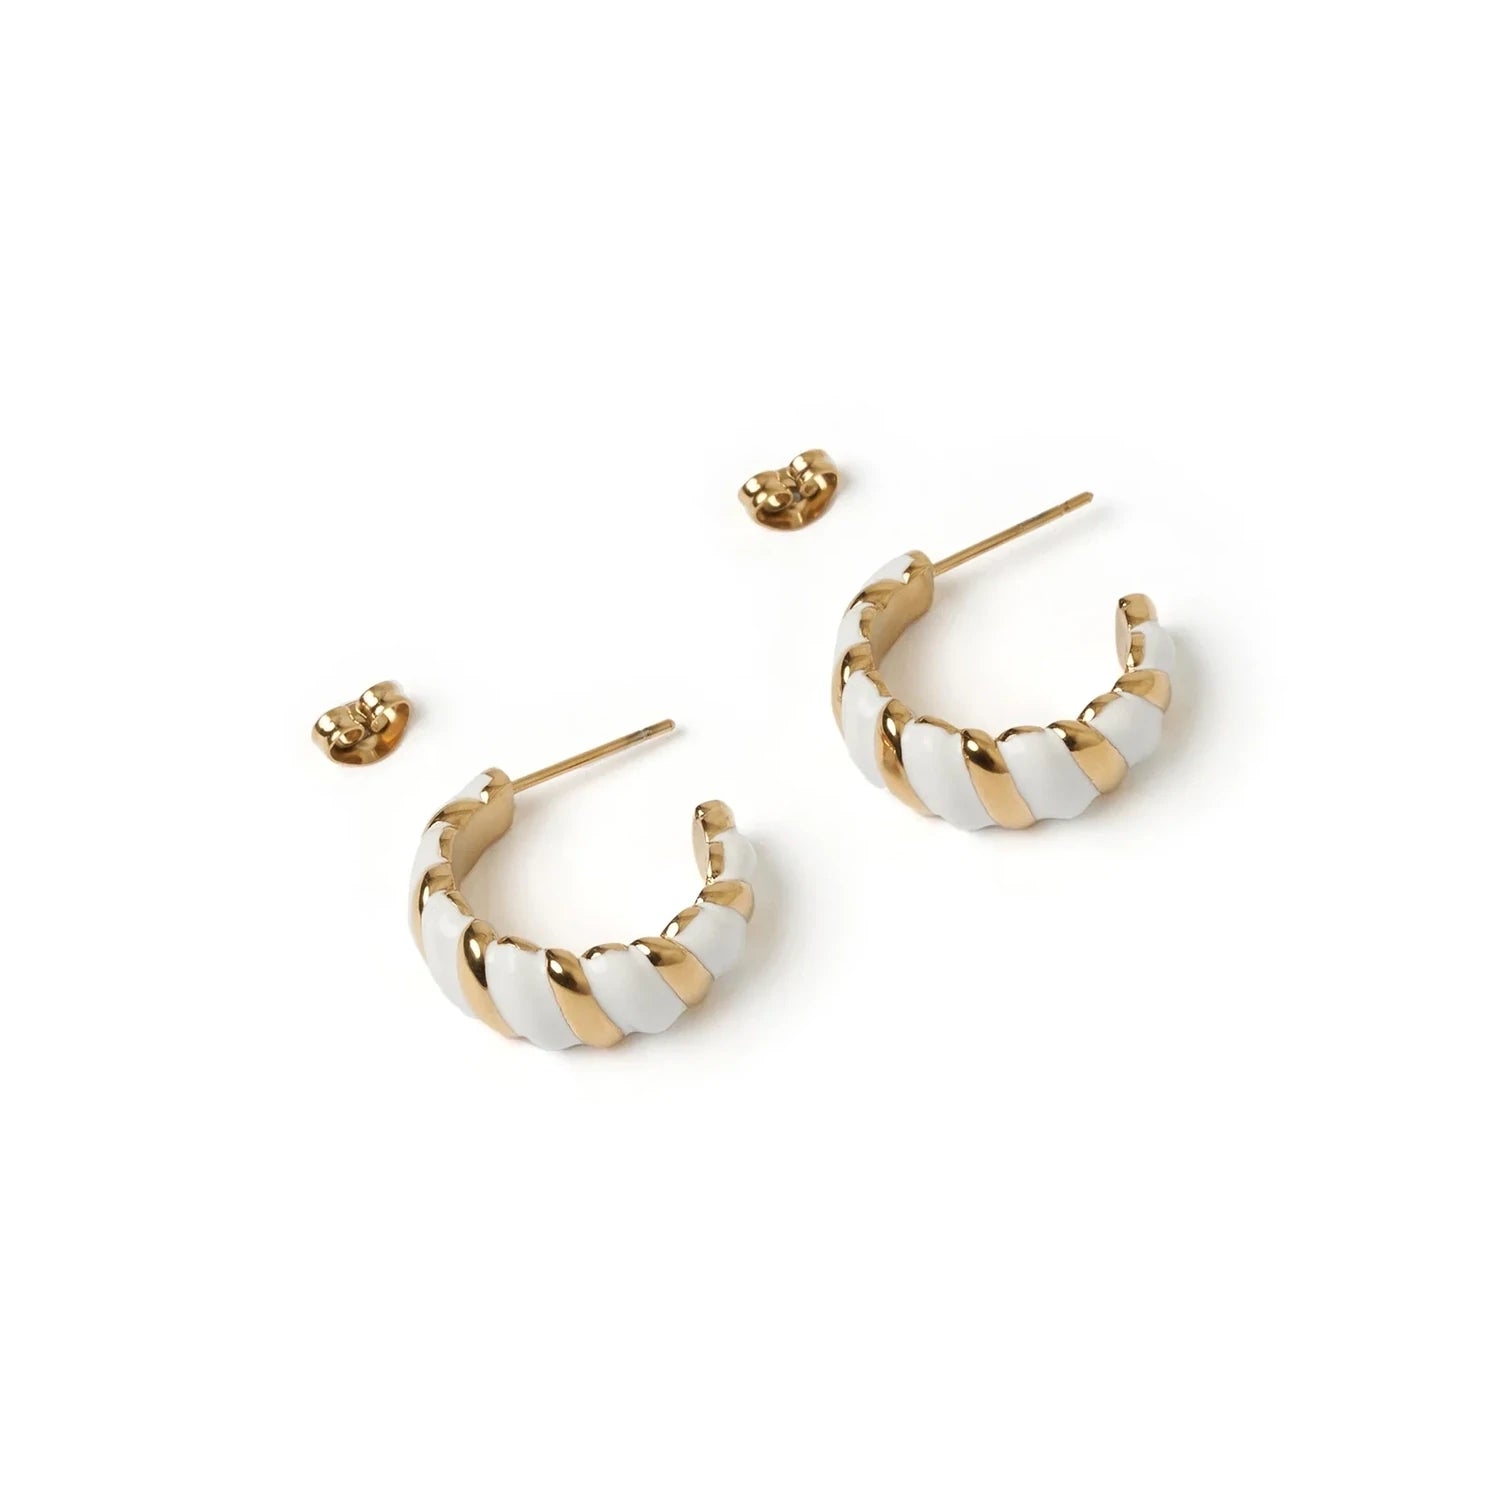 Hudson Gold & Enamel Earring